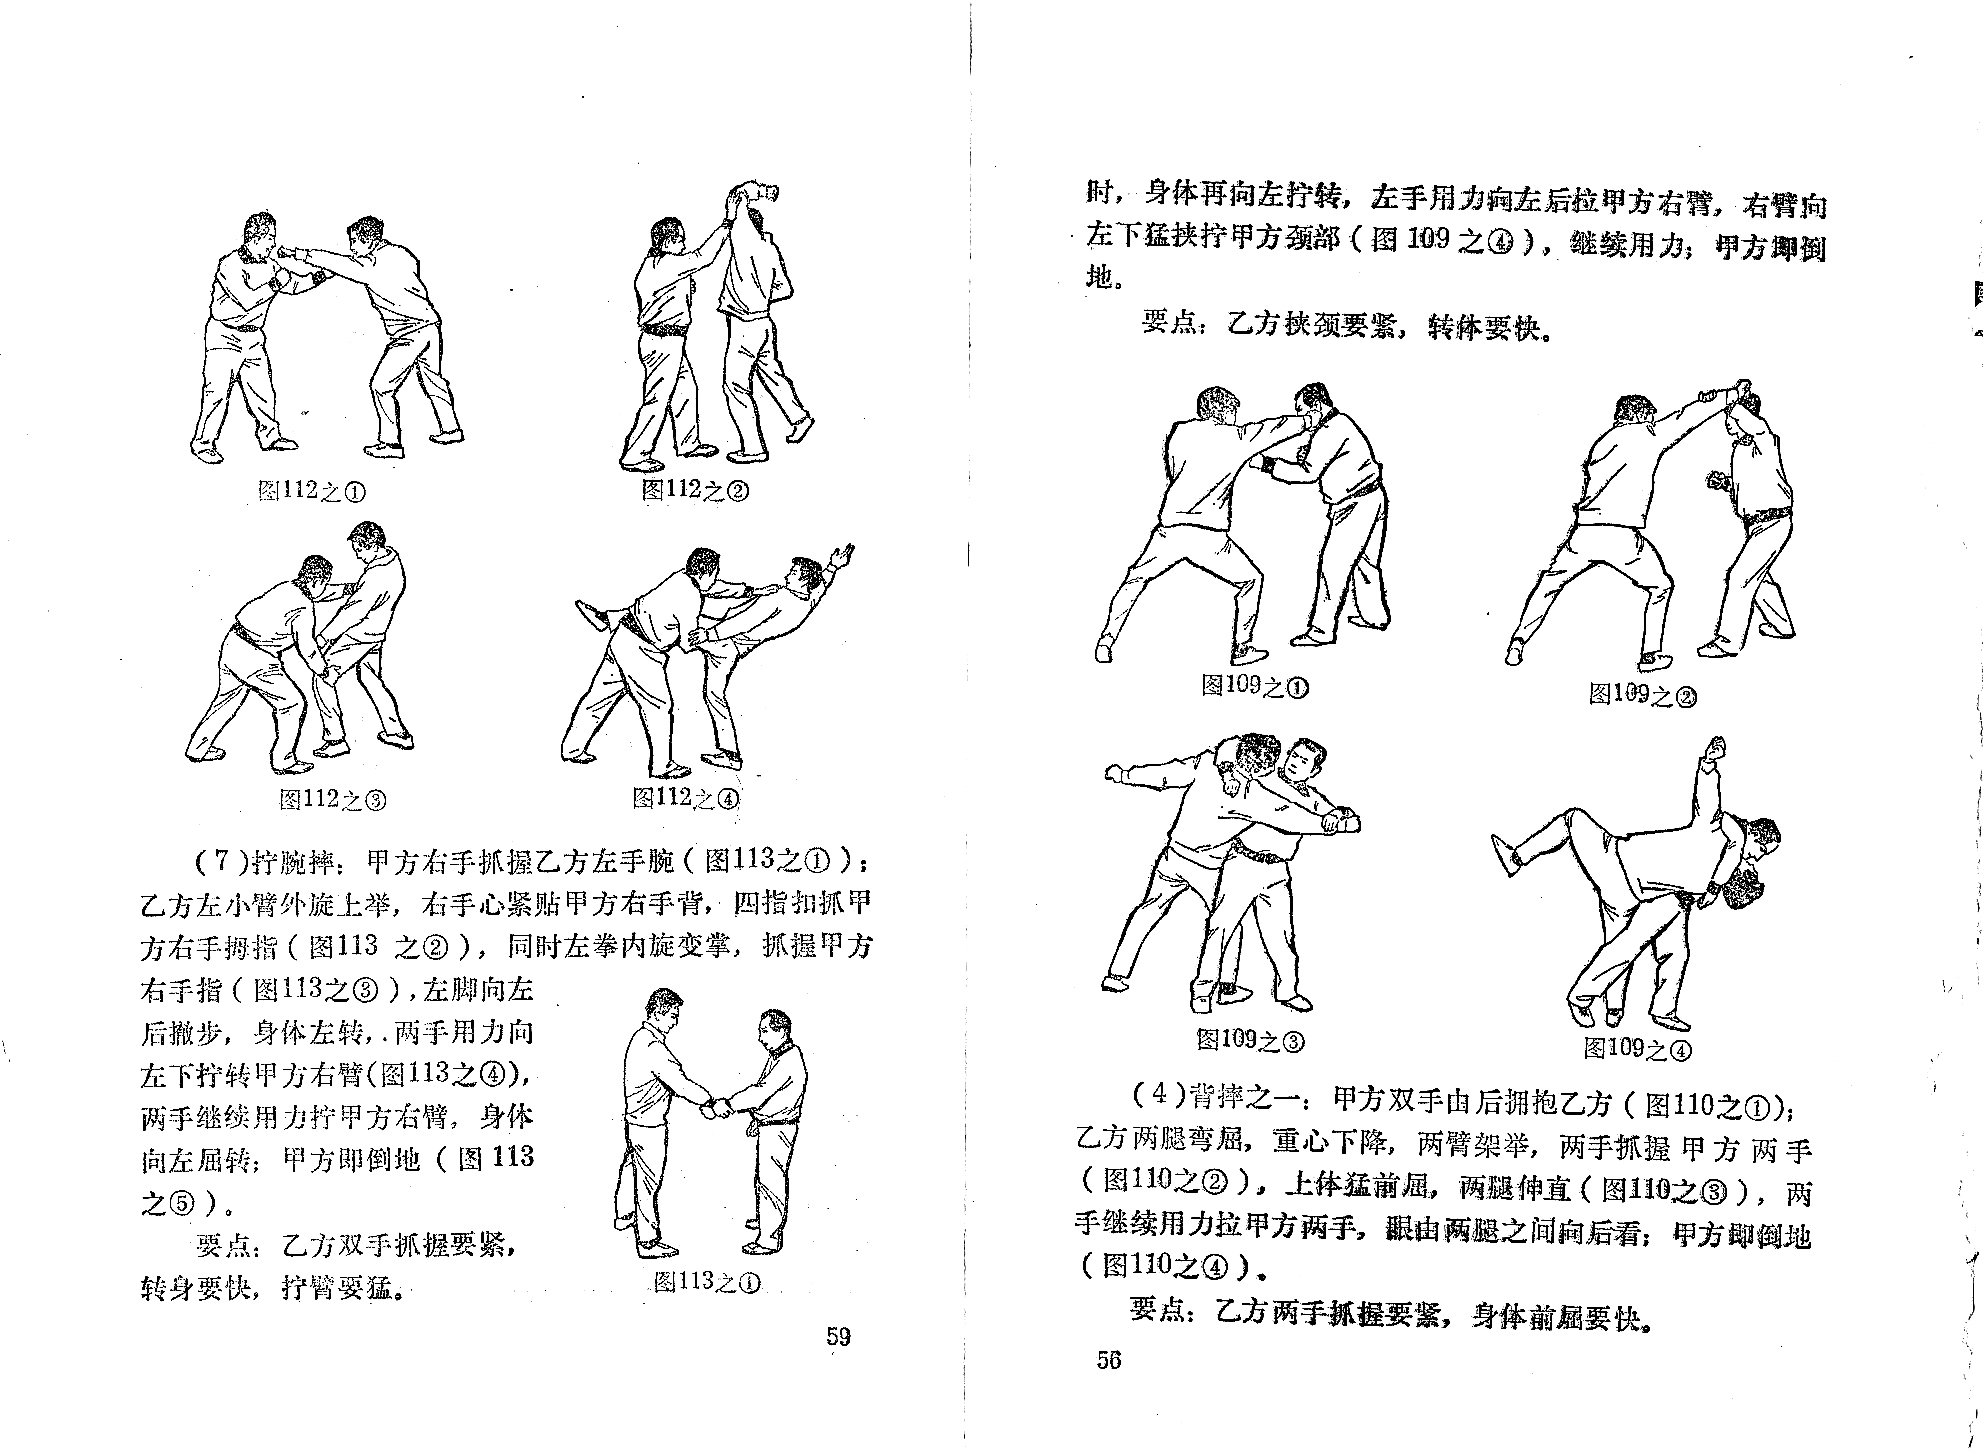 kung fu manual pdf free